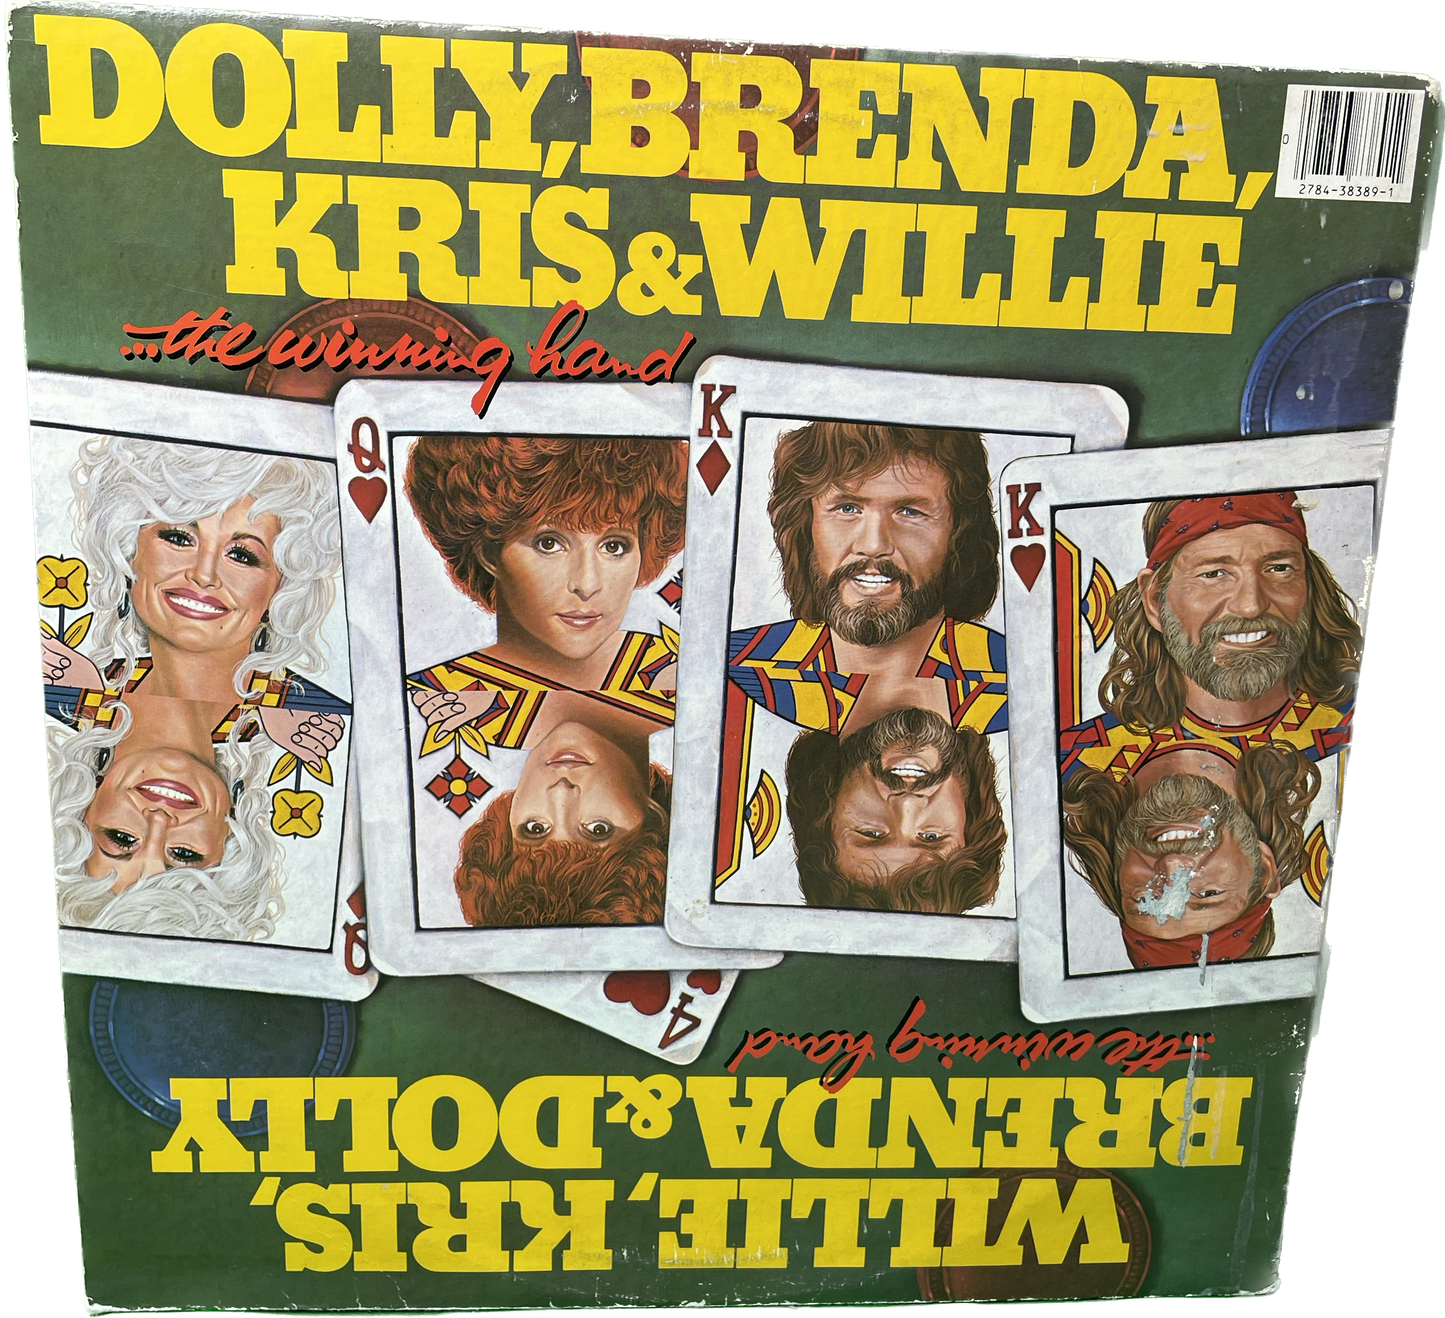 G VG Kris, Willie, Dolly & Brenda The Winning Hand Vinyl 2 LP